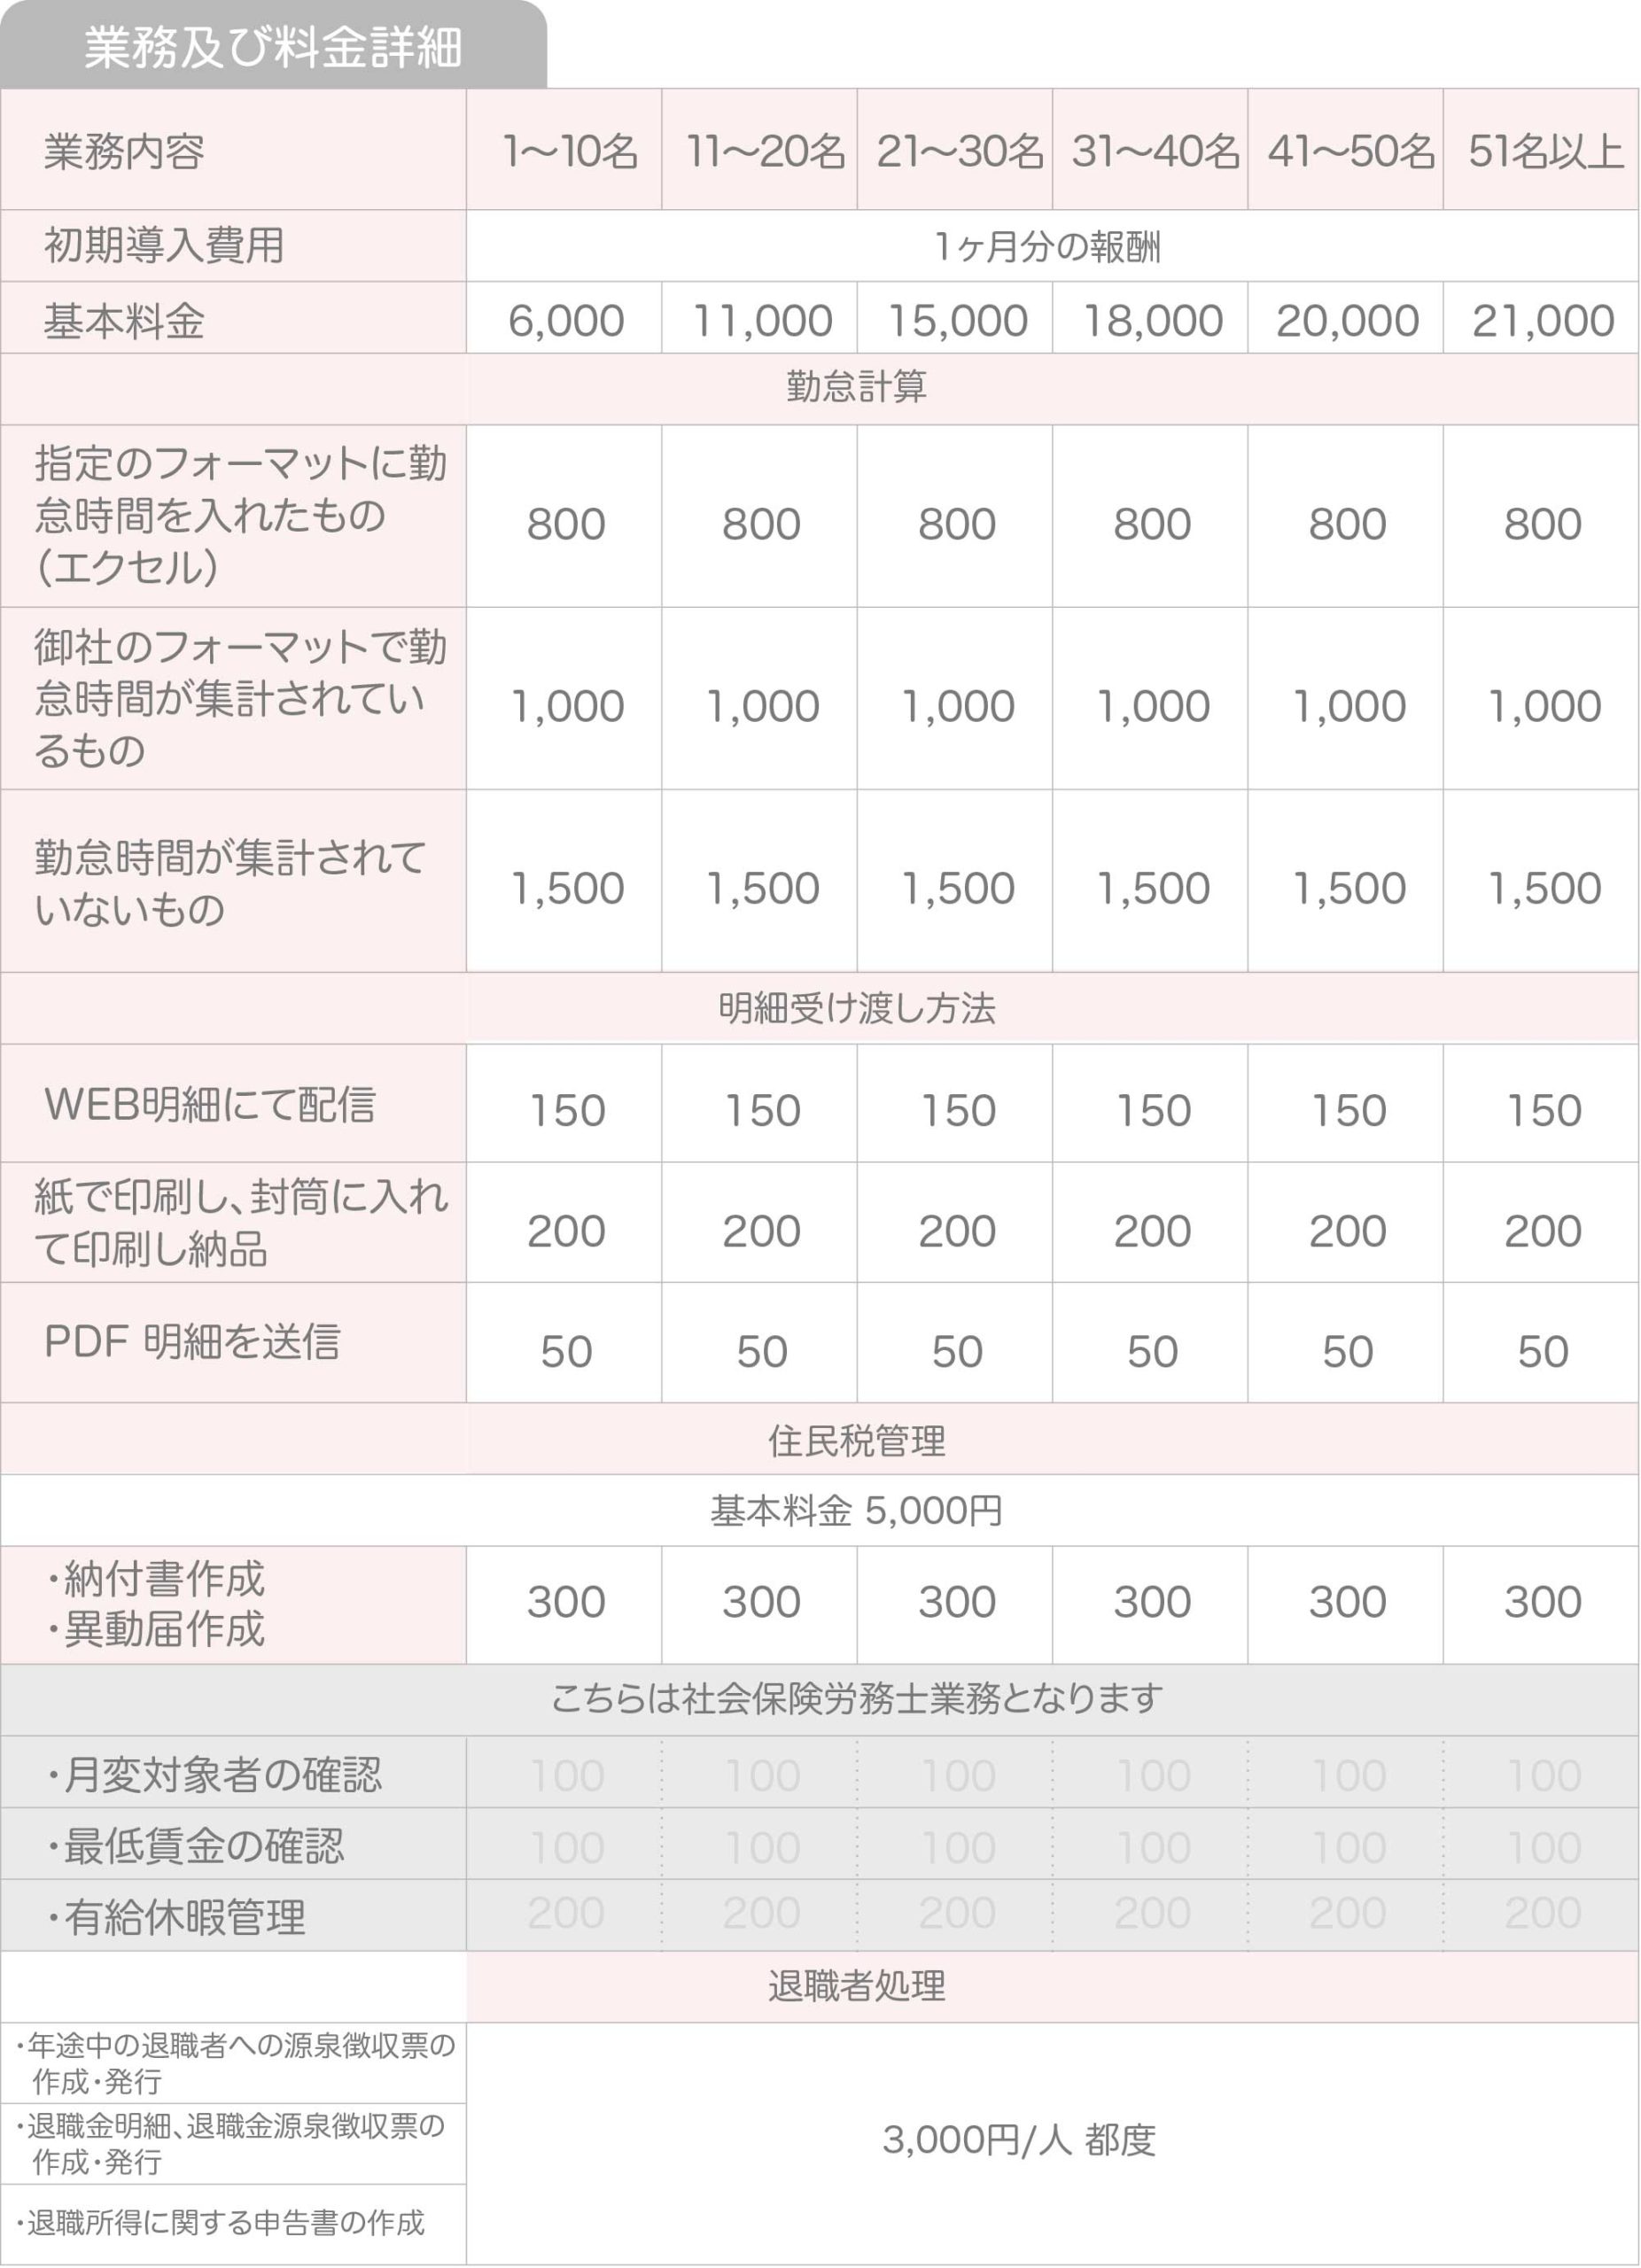 浅野会計事務所の金額・給料計算料金表